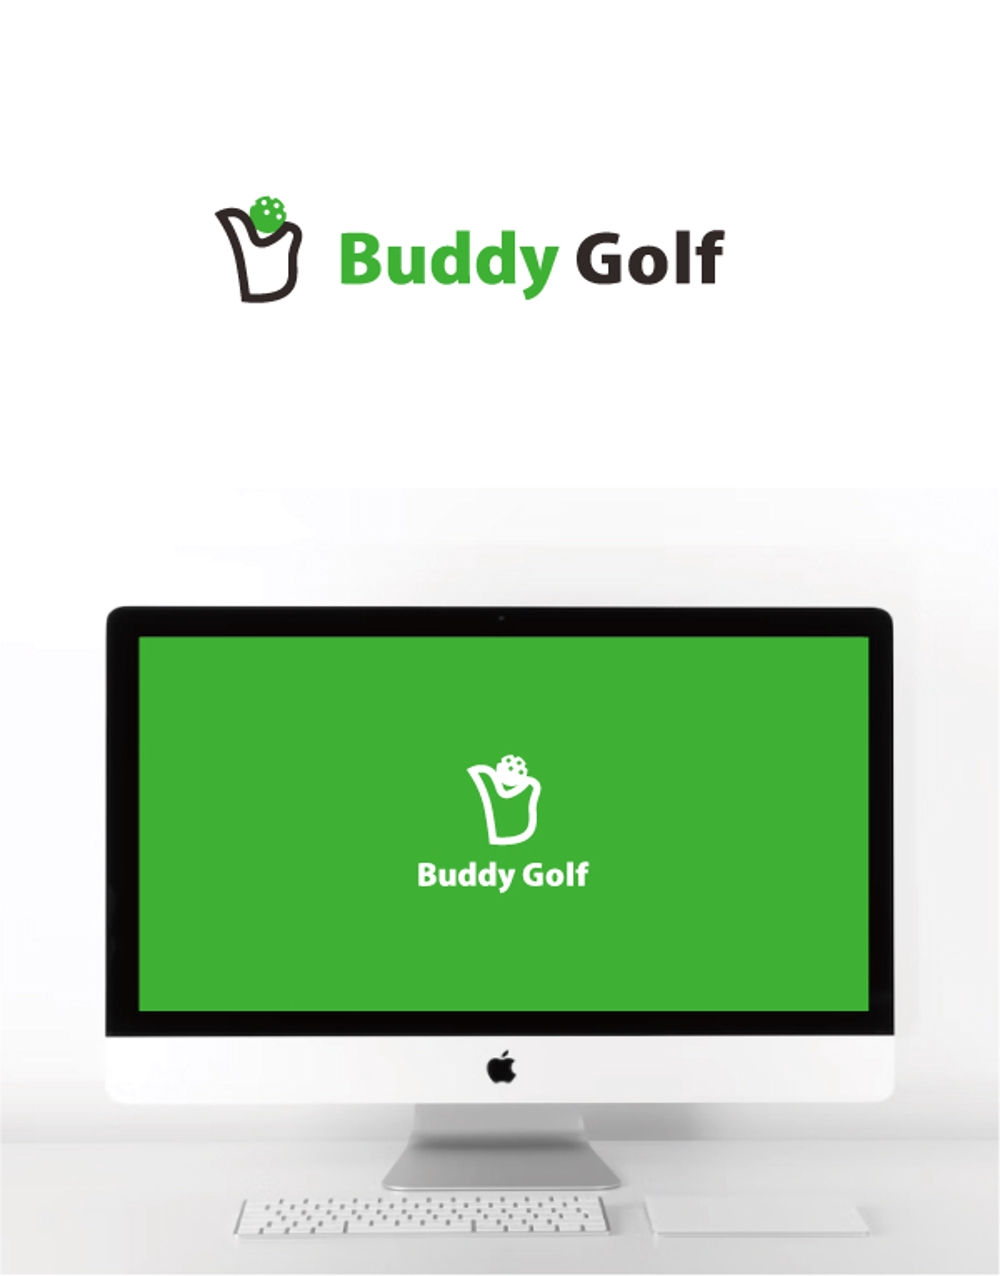 ロストボール販売ECサイト「Buddy Golf」のロゴ